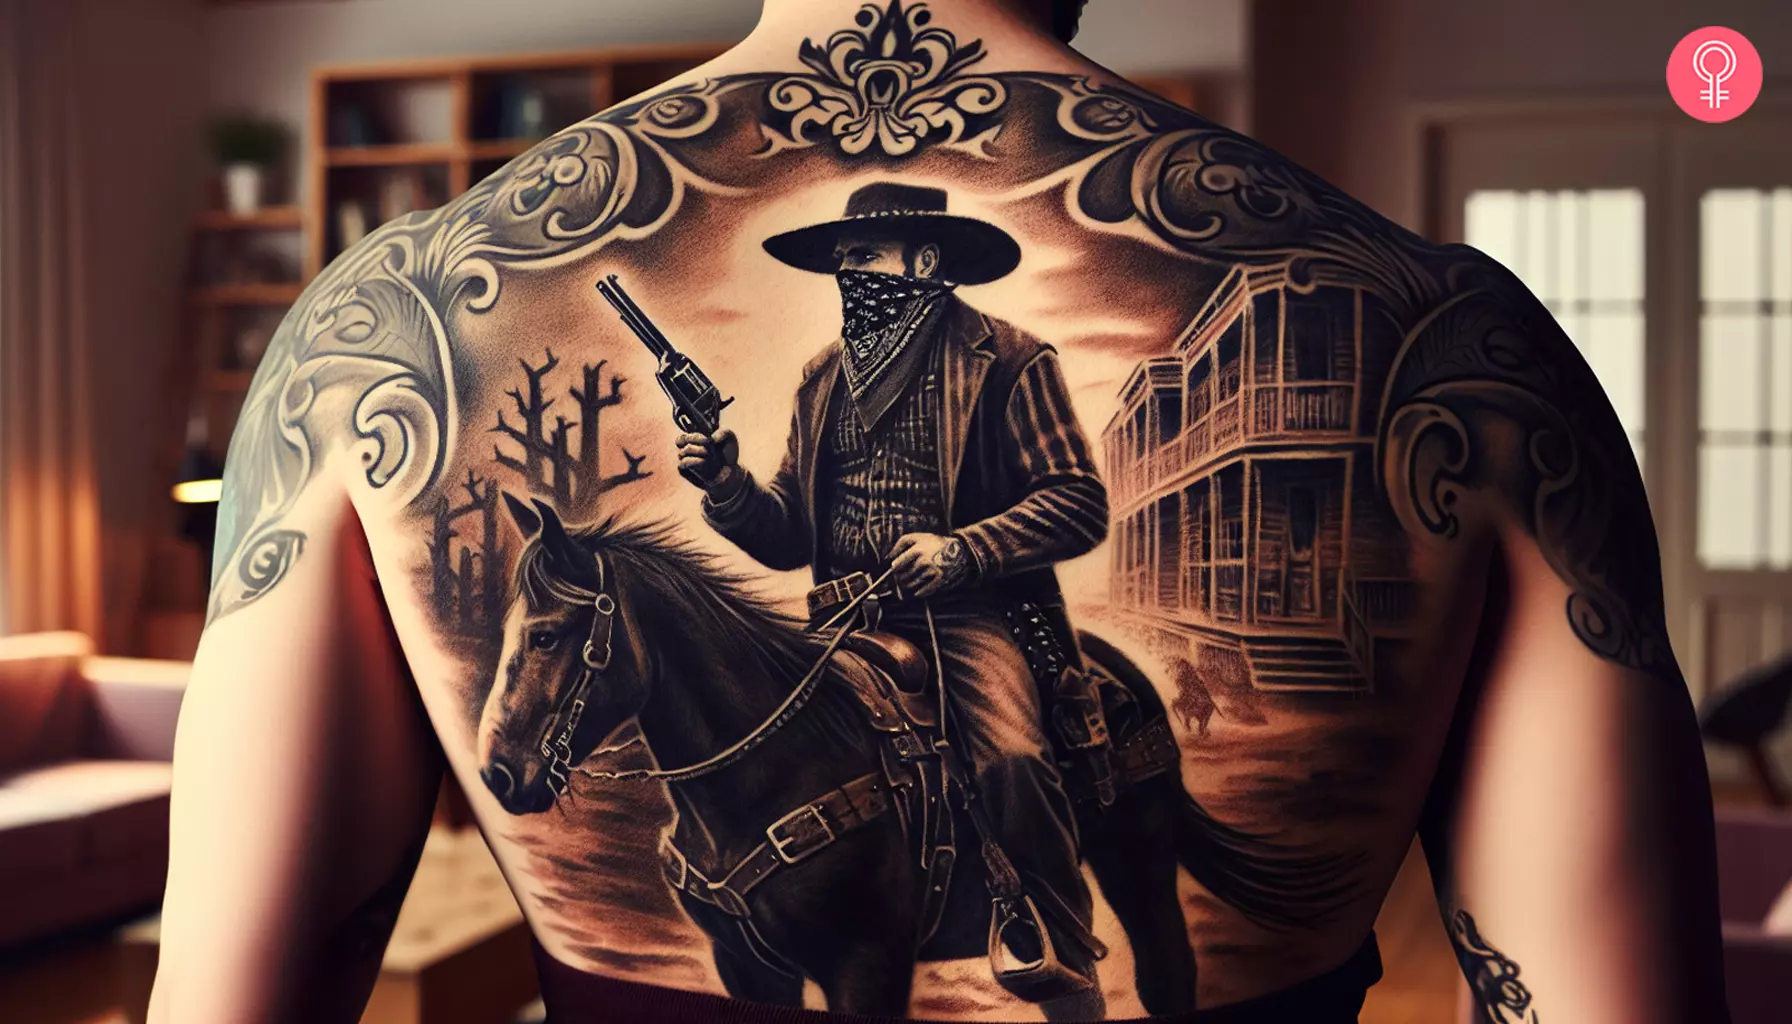 Outlaw western cowboy tattoo